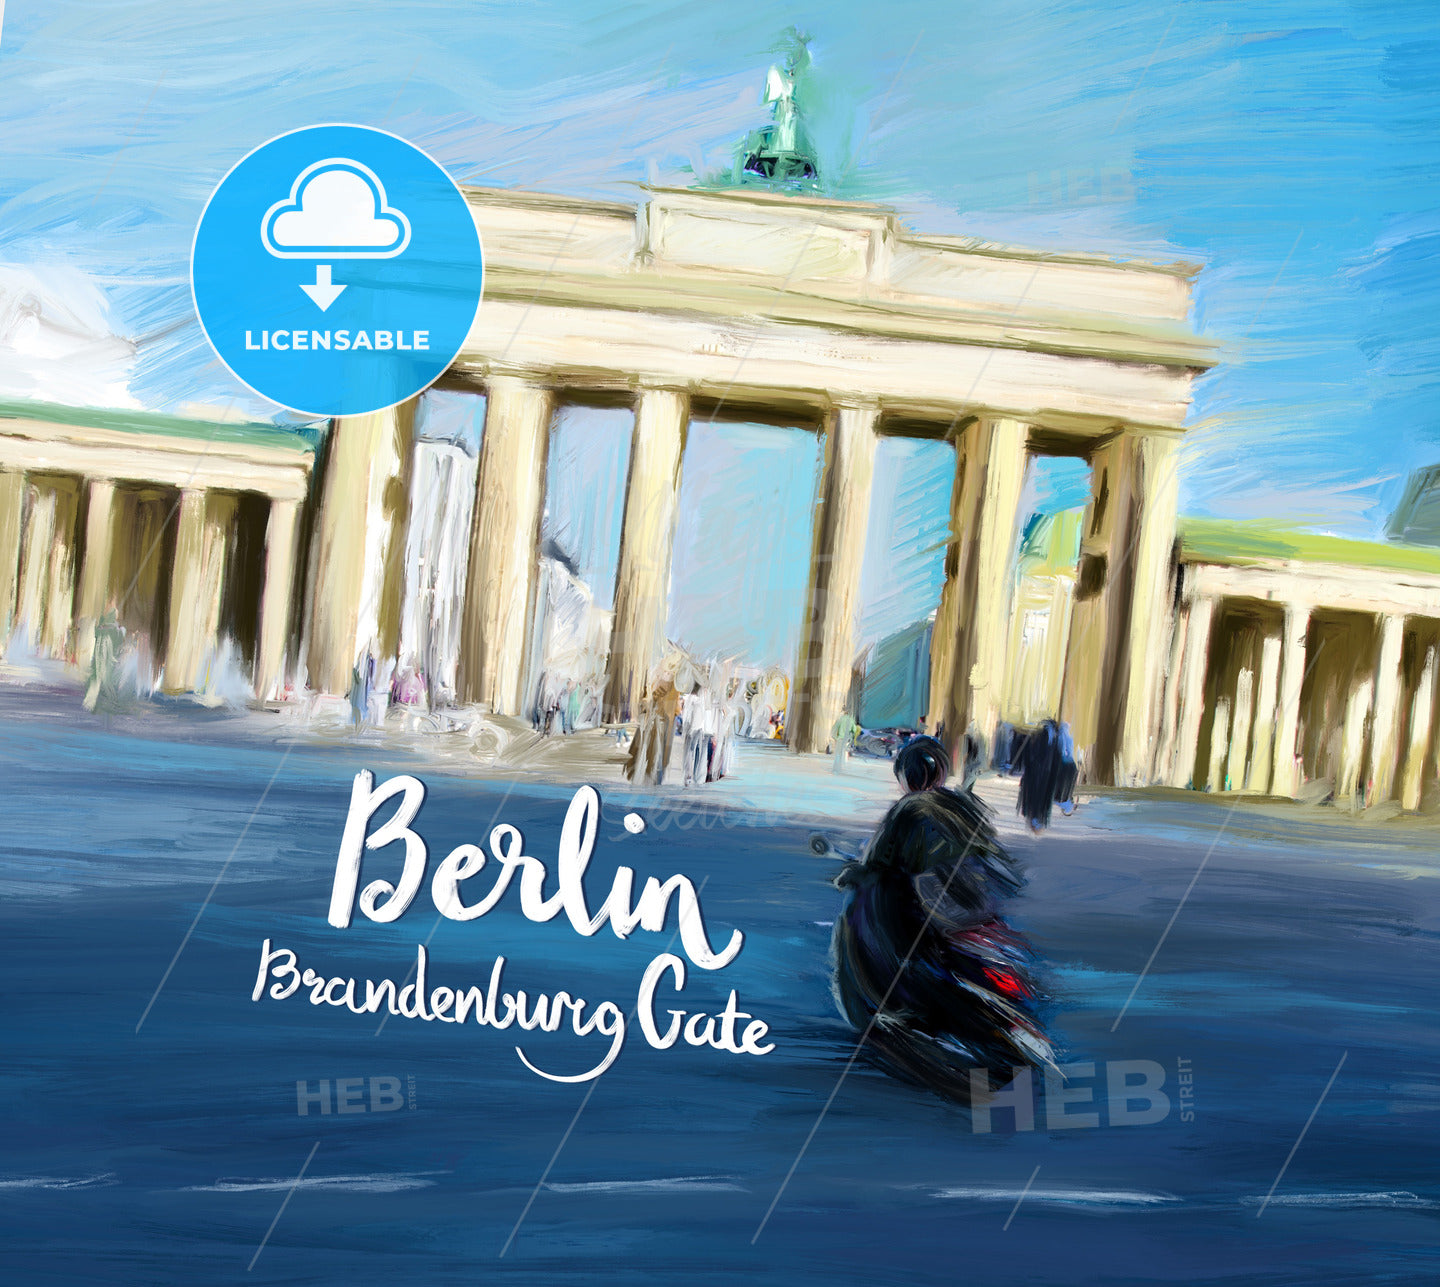 Berlin Brandenburg Gate Movie Poster Design – instant download